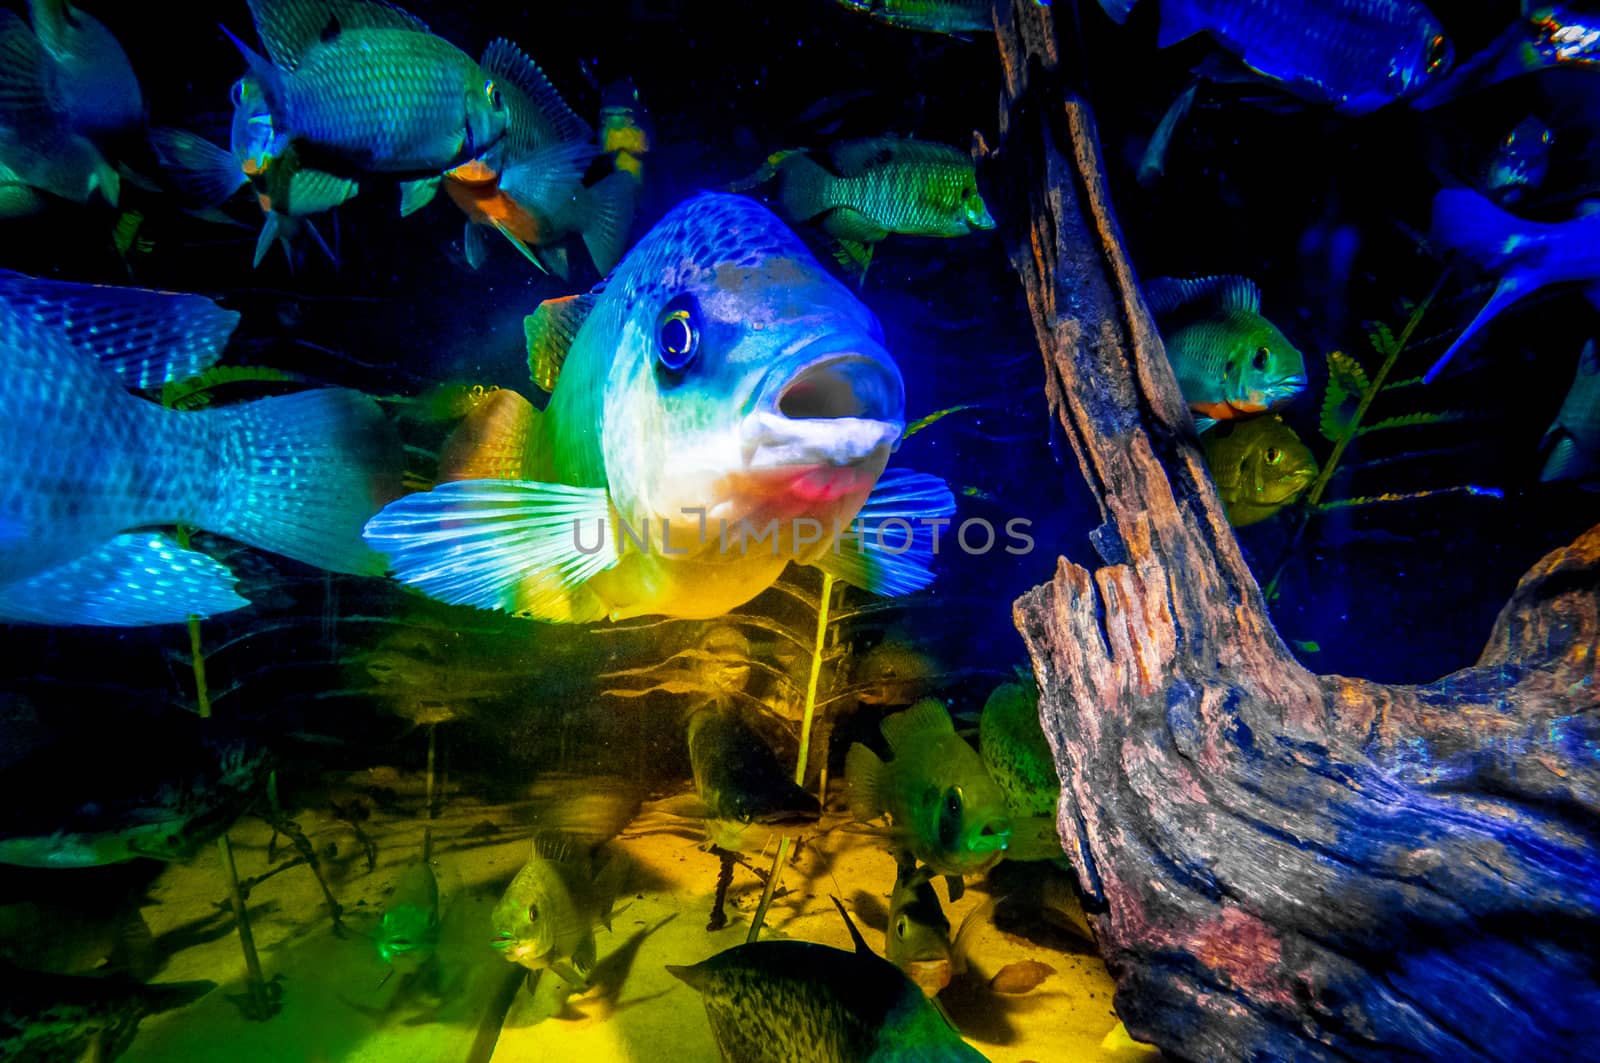 Portrait of Talapia in a fish tank by JFJacobsz